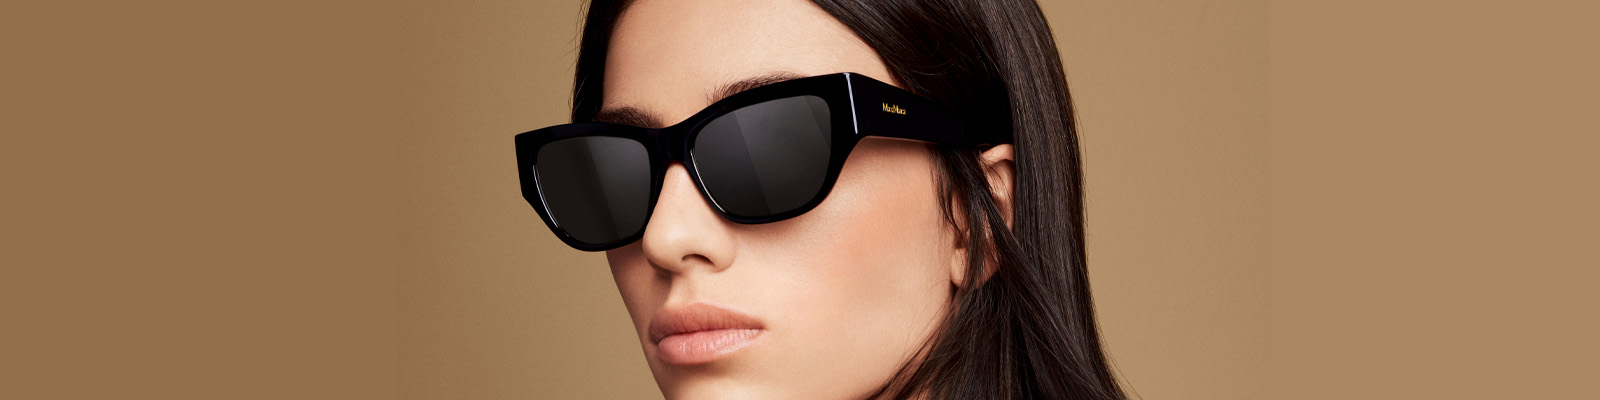 De nieuwe monturen en zonnebrillen van Max Mara zijn echte fashion statements